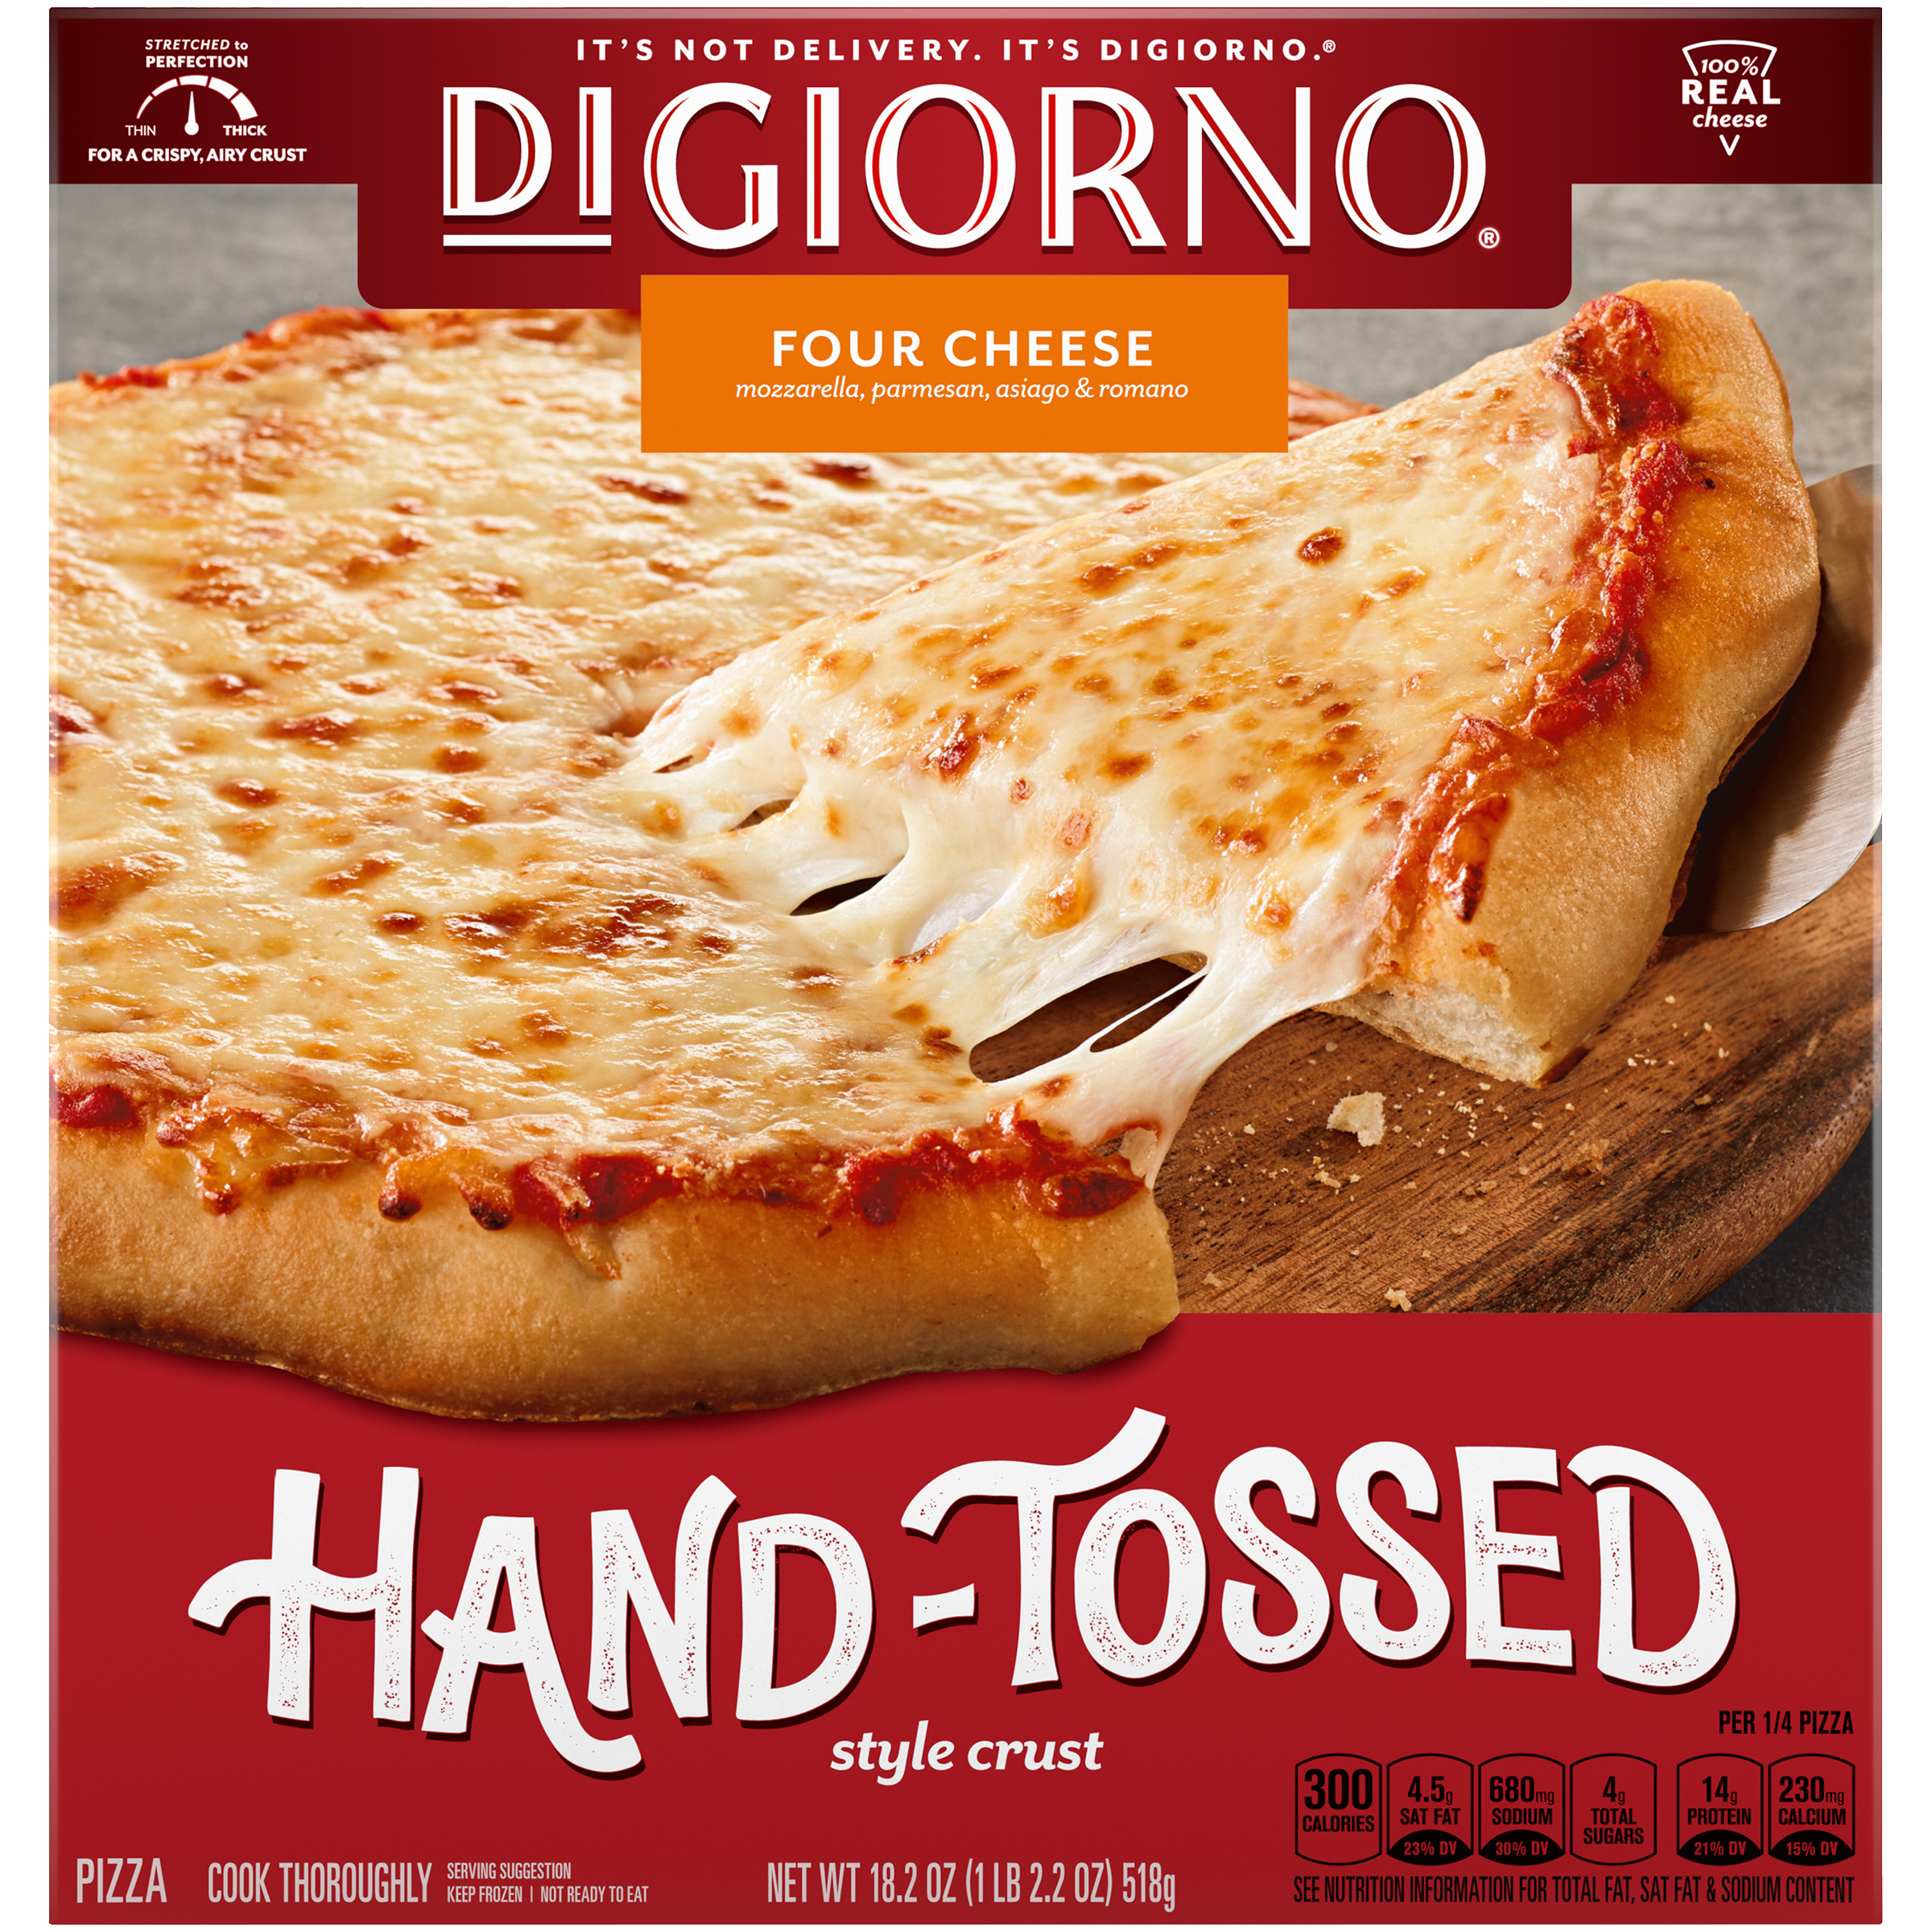 DIGIORNO Hand Tossed Four Cheese Pizza 12 units per case 18.2 oz